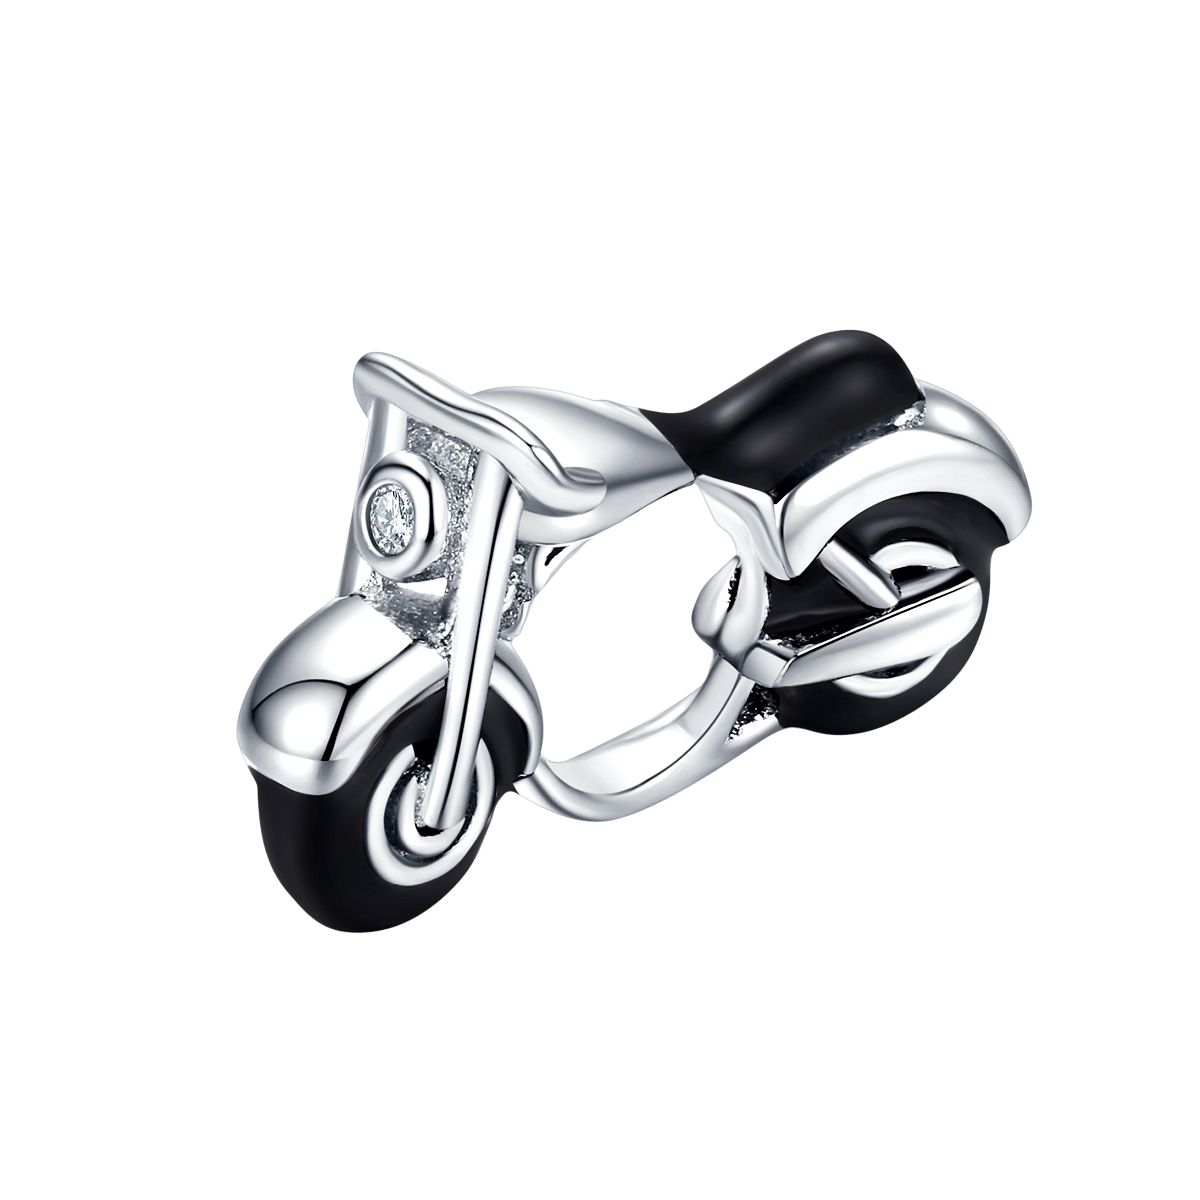 Motor bead zirkonia  motorfiets bead  Zilverana  geschikt voor Biagi , Pandora , Trollbeads armband  925 zilver